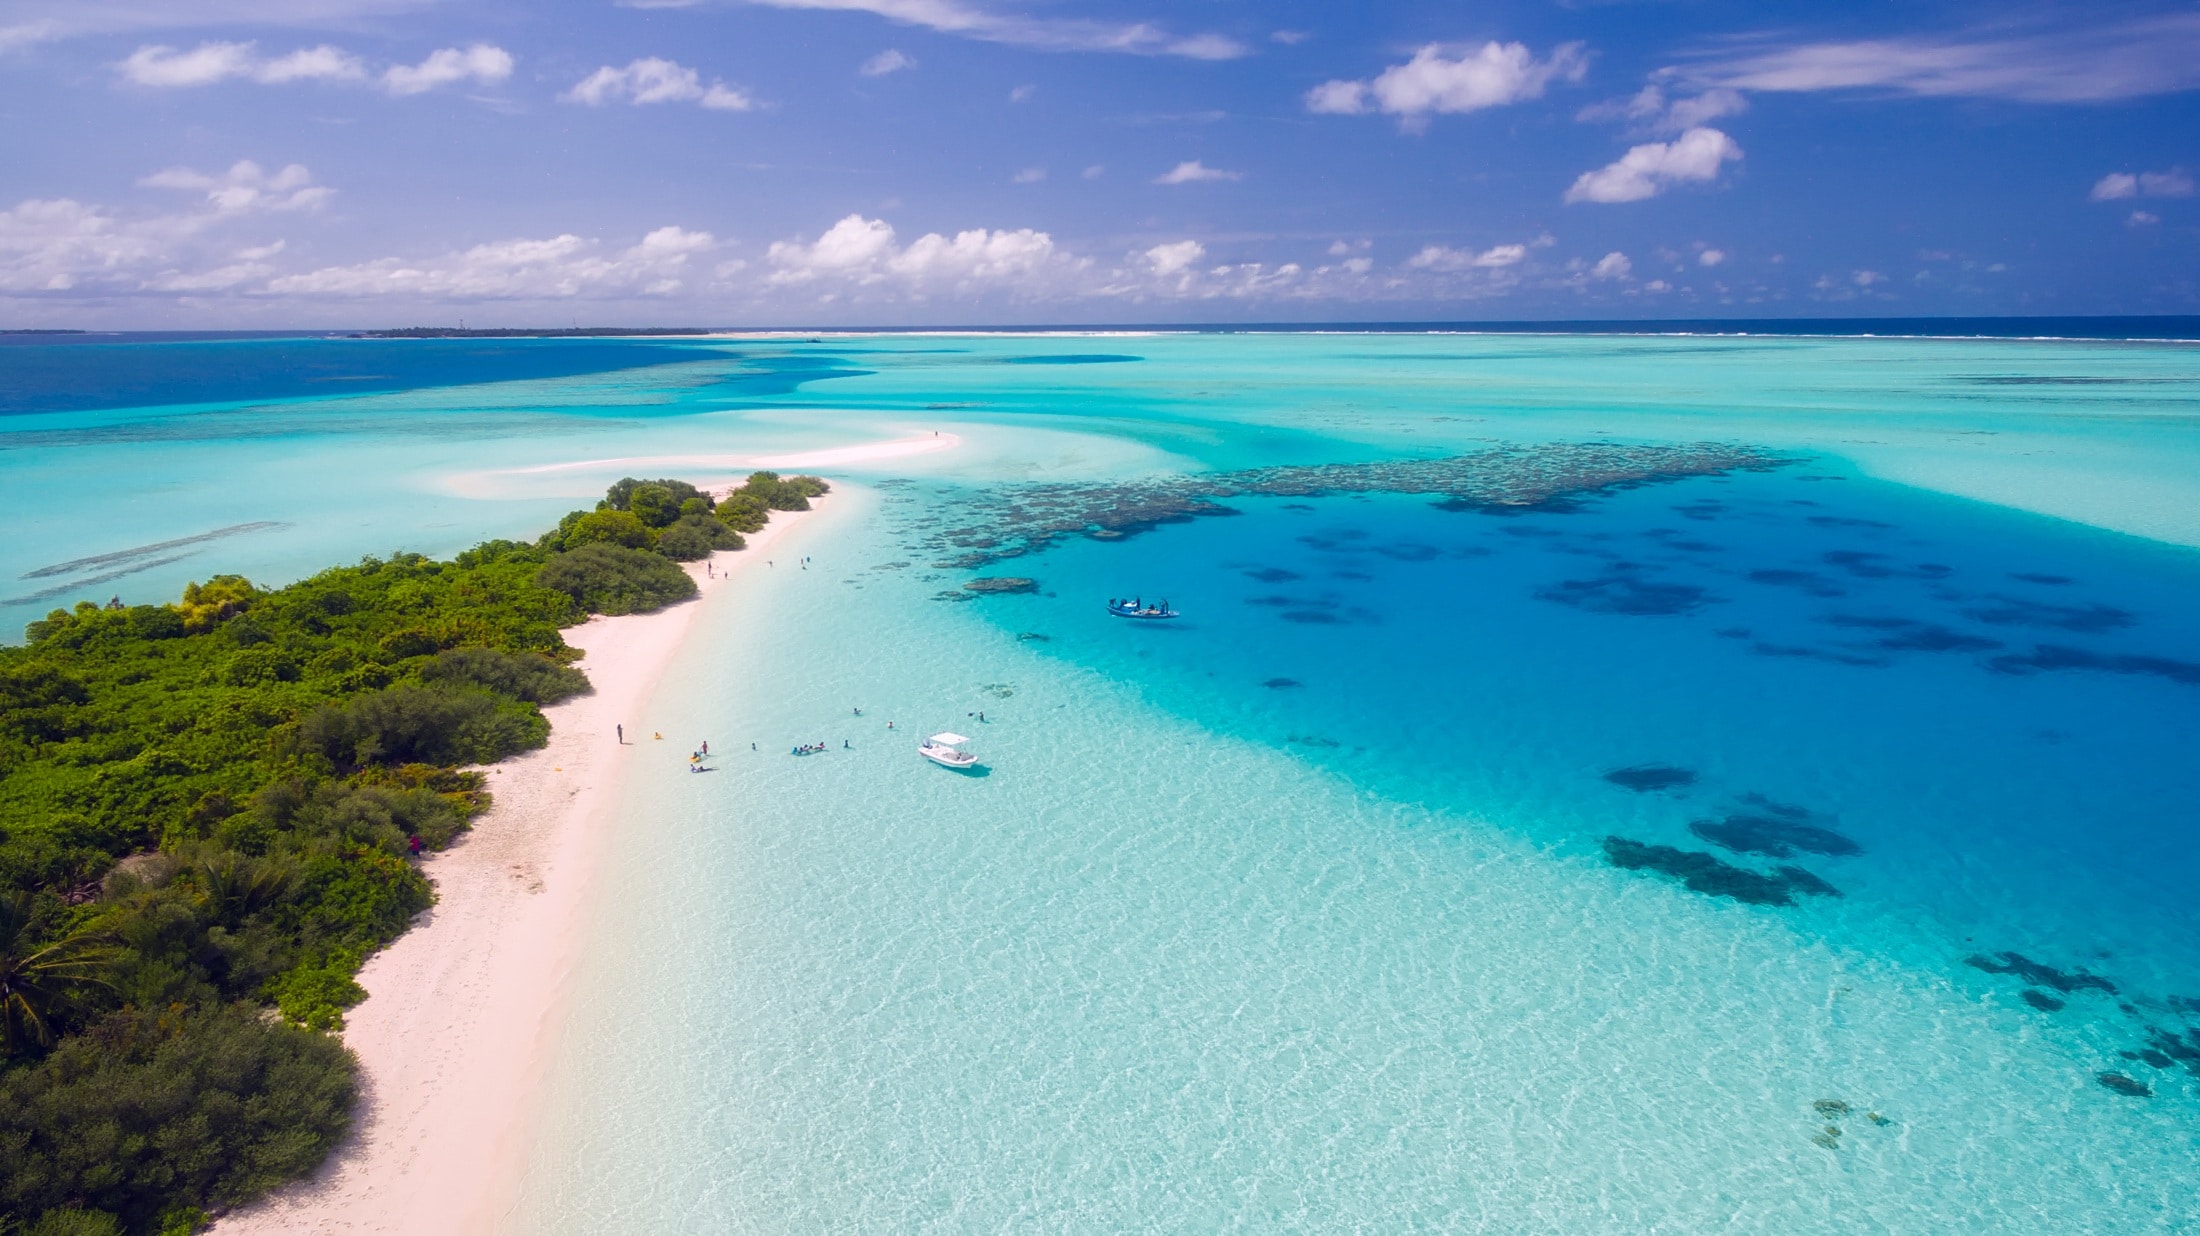 maldives destination de voyage populaire 2021